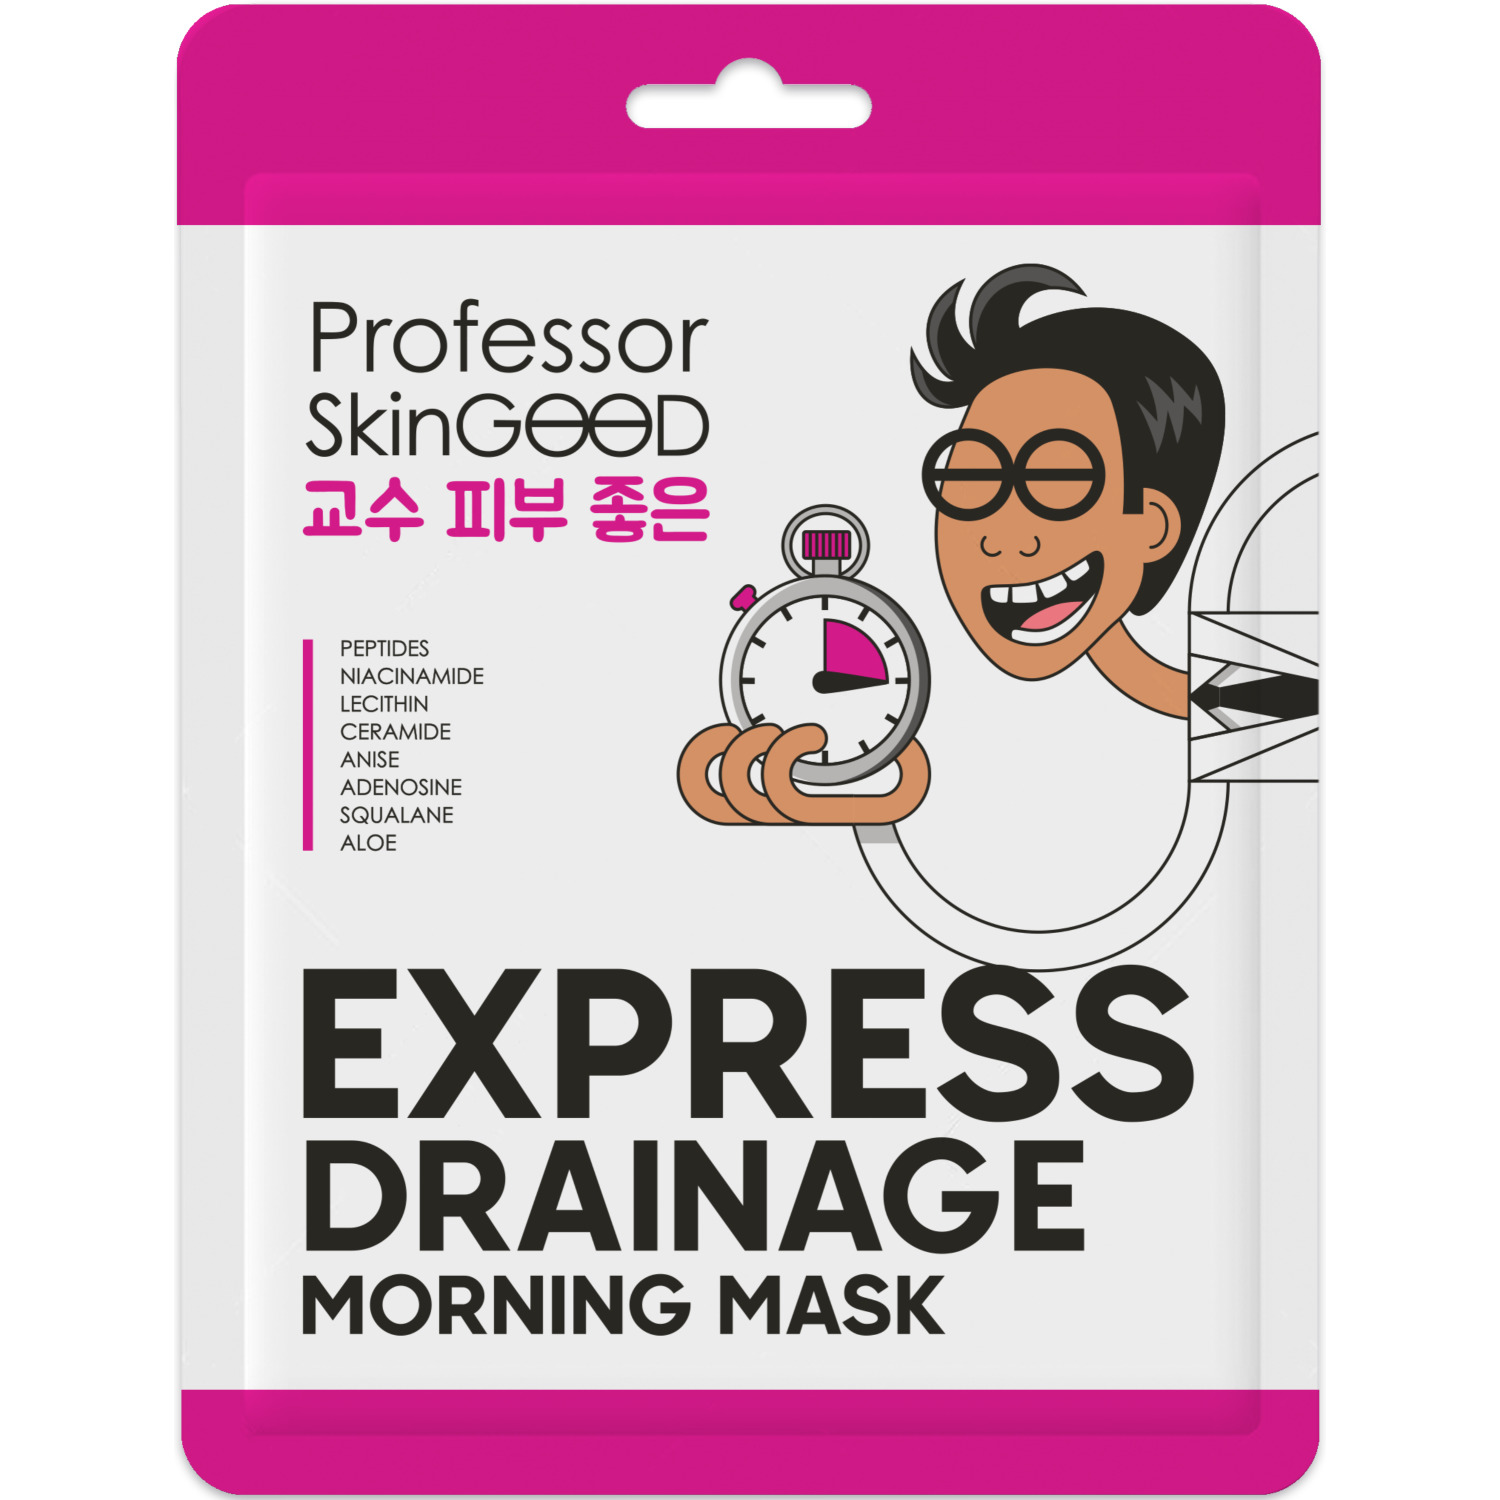 Mаска для лица Professor SkinGOOD Drainage Mask утренняя 20 г skinlite гелевые подушечки против отечности под глазами женьшень